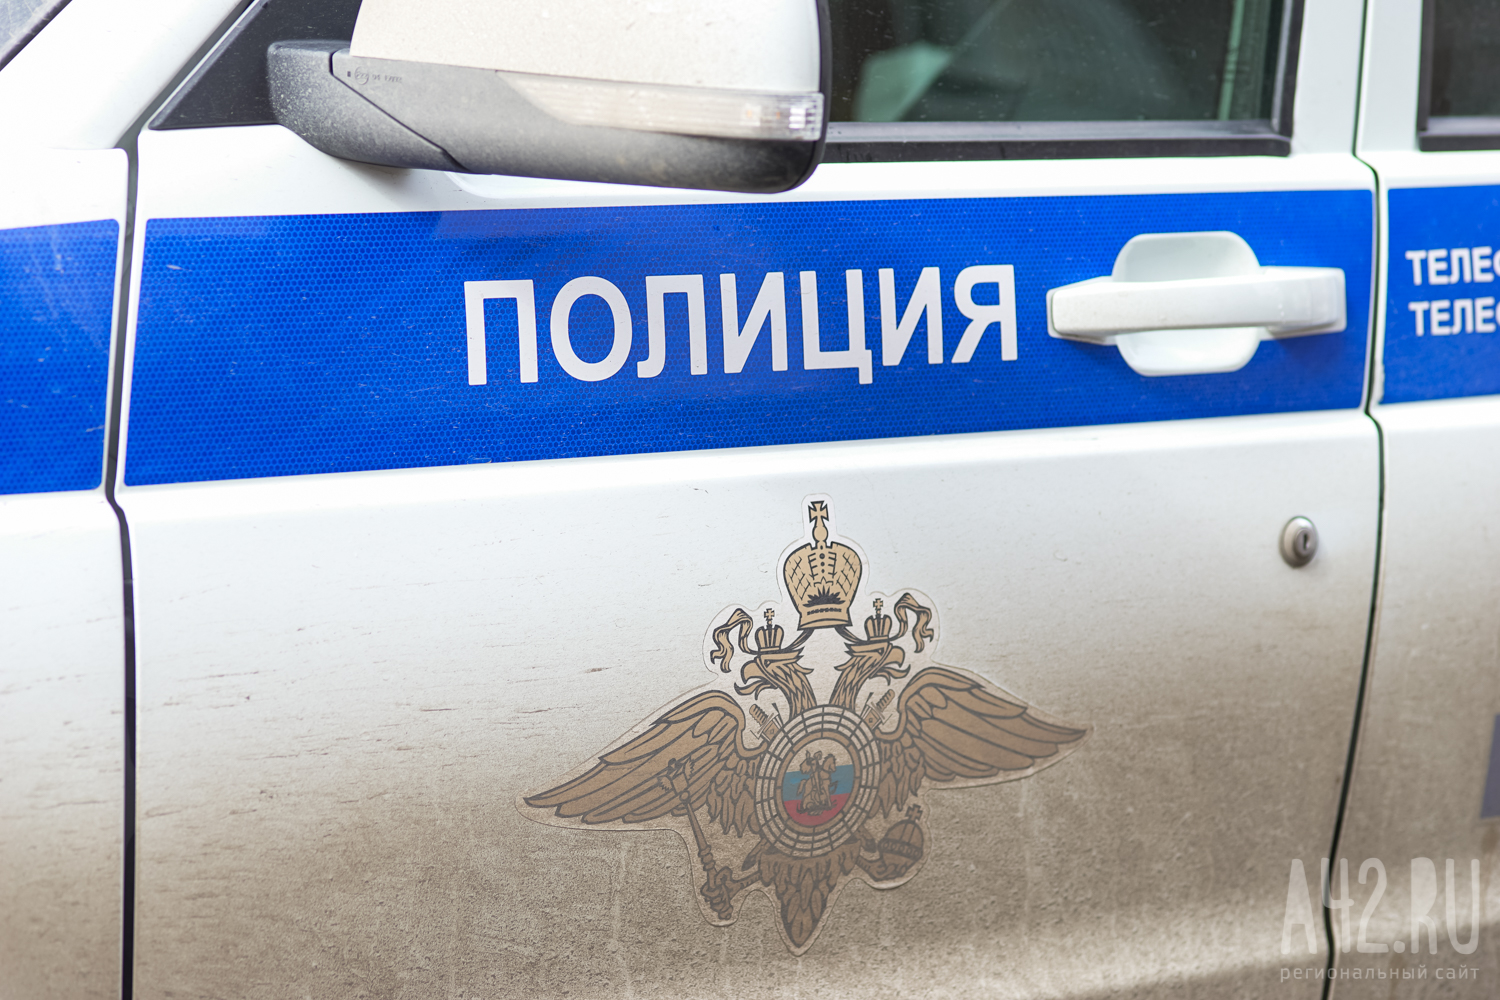 Стали известны подробности нападения на сотрудника ГИБДД в Подмосковье 